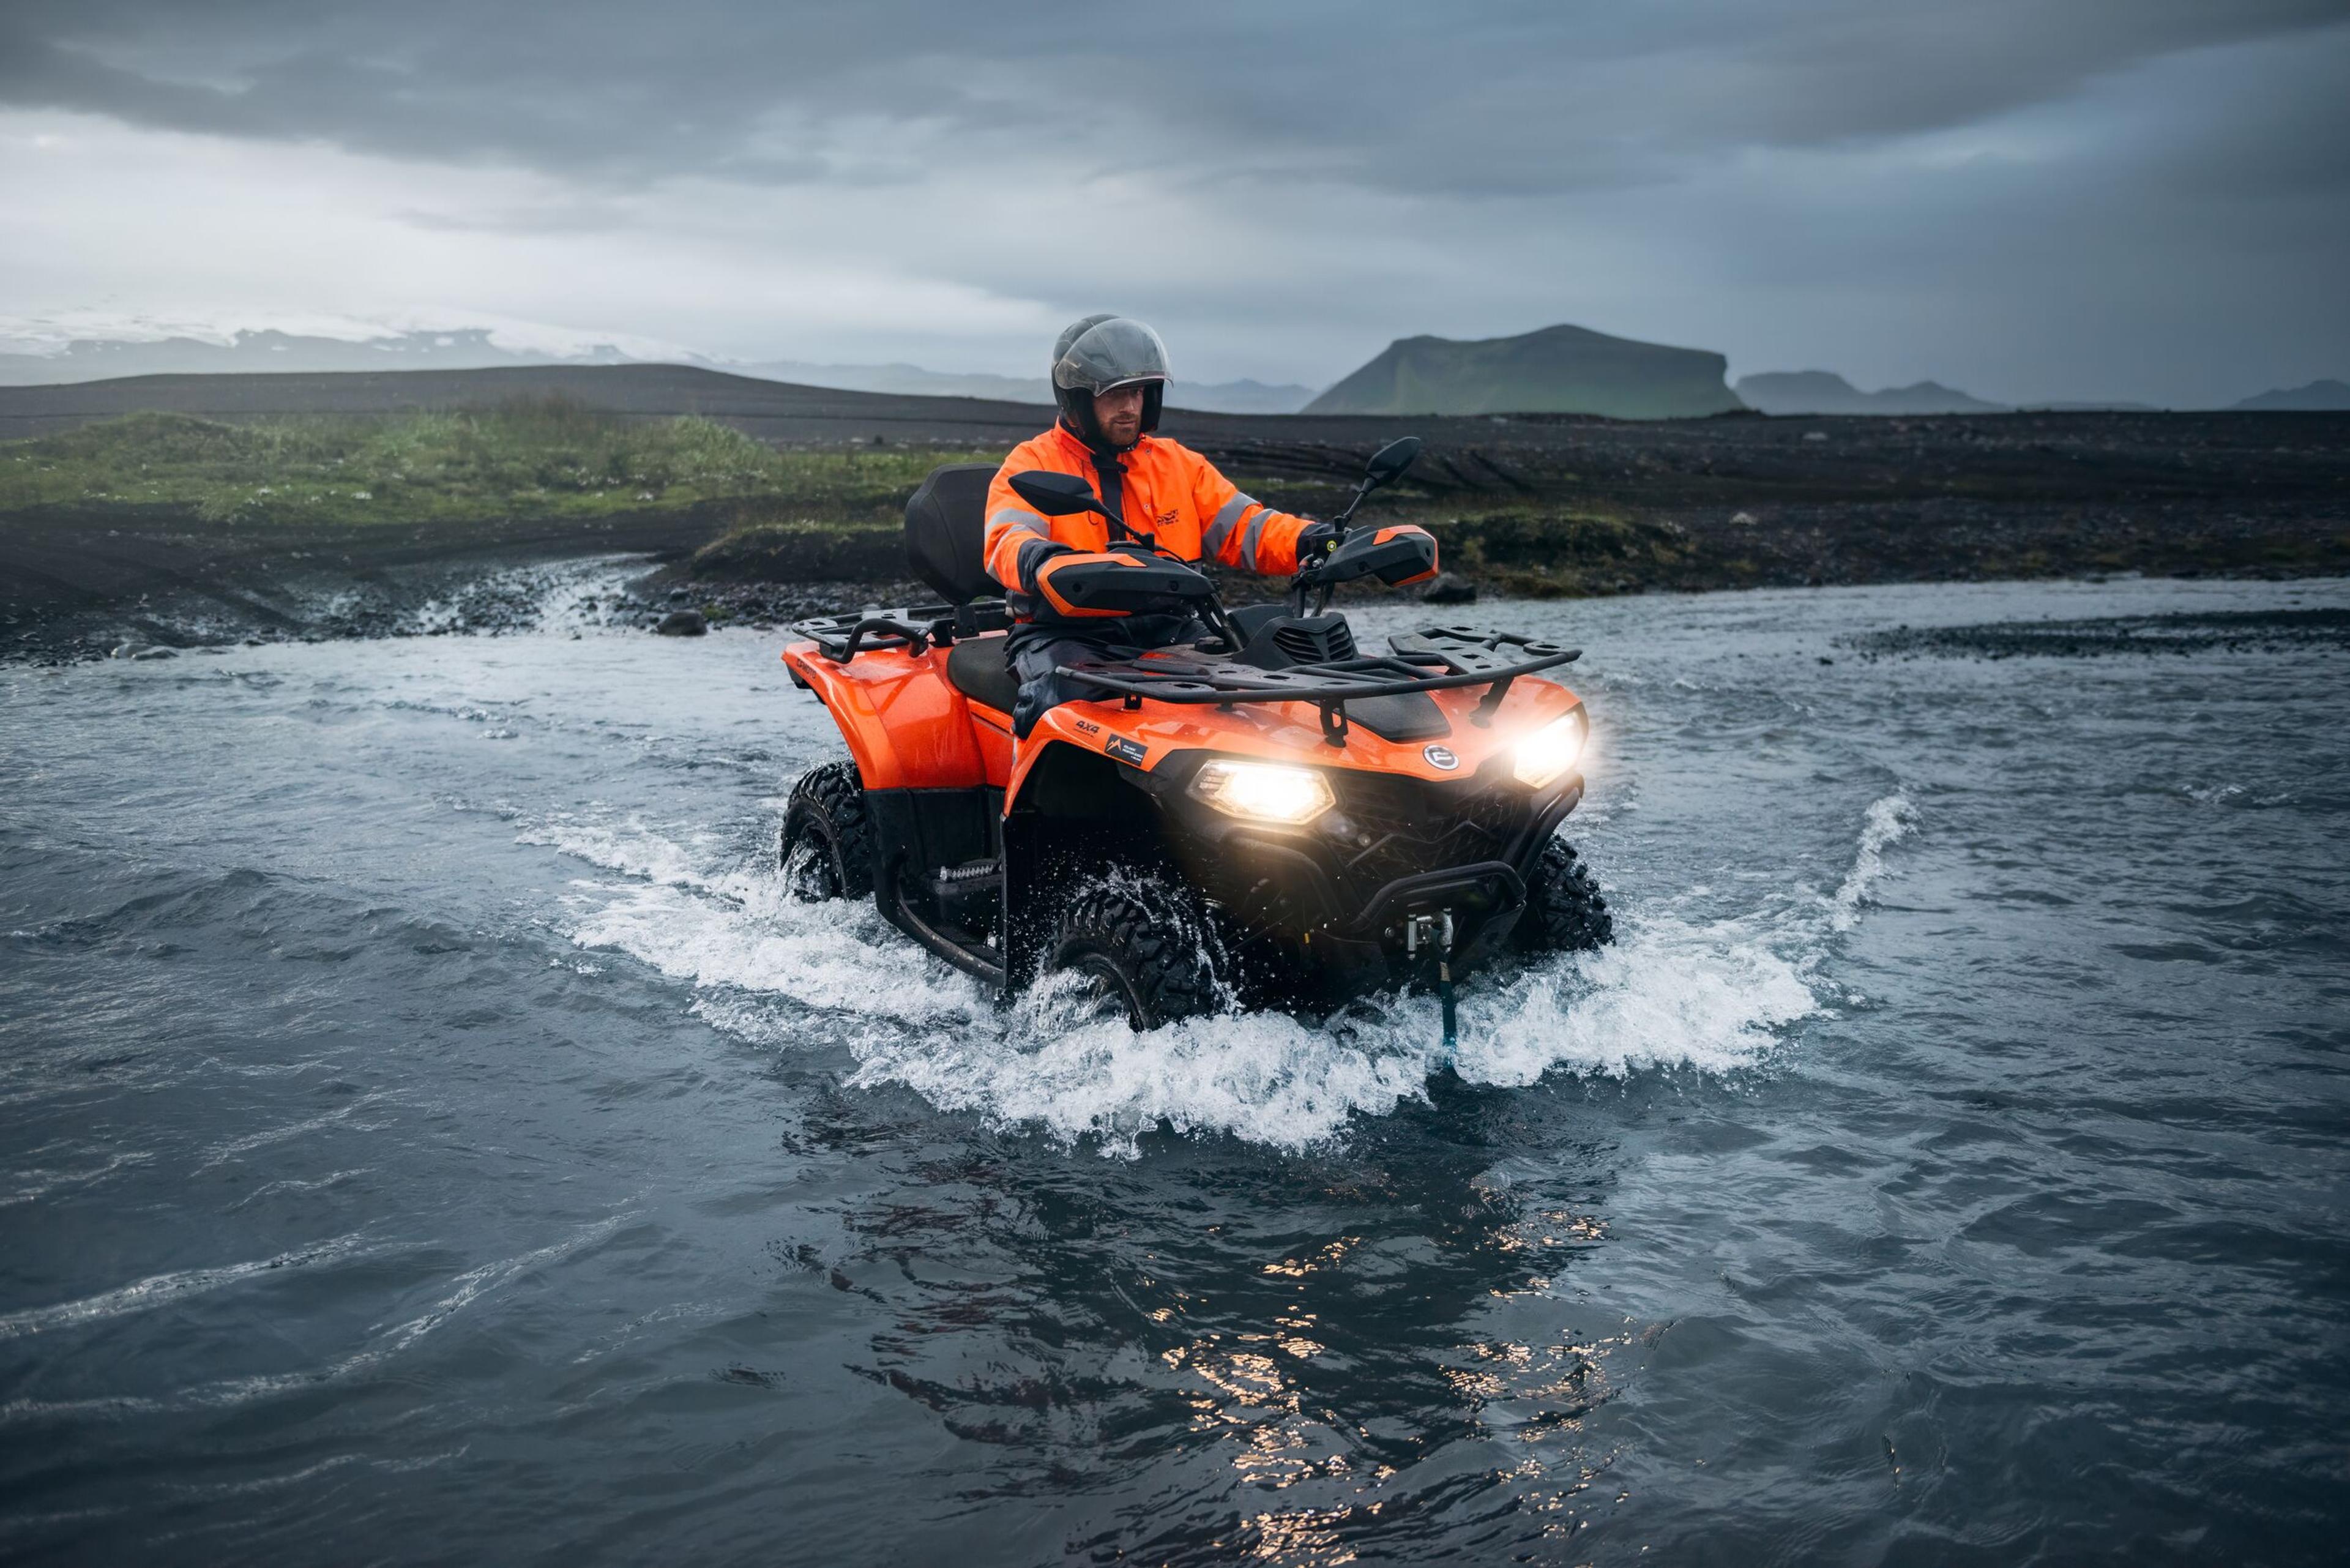 Person riding an orange ATV through a river in Iceland.